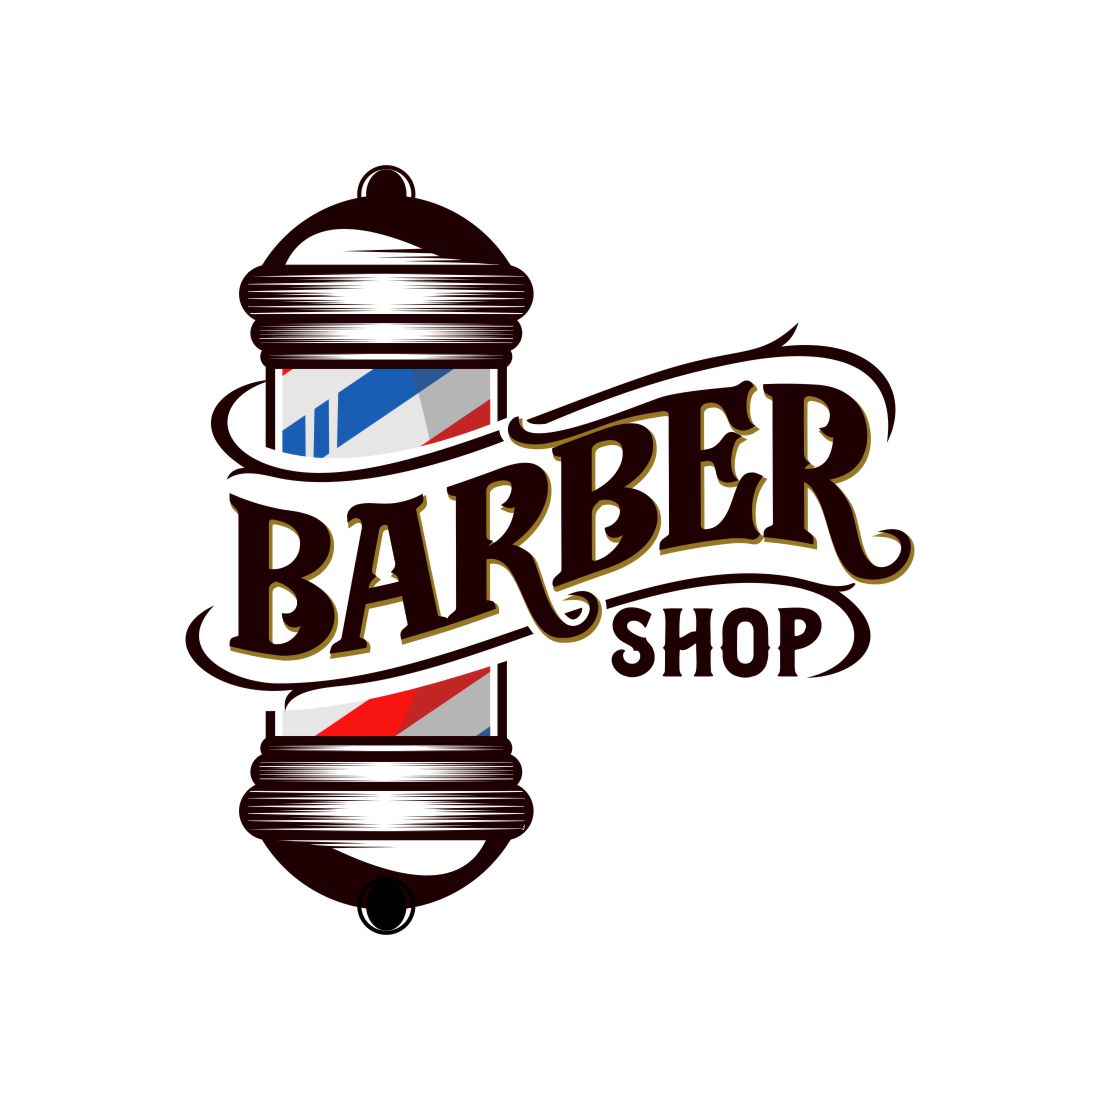 Vintage barber shop Logo, haircut salon retro design, Old hairdresser badge with barber pole, scissors, razor blade vector cover image.